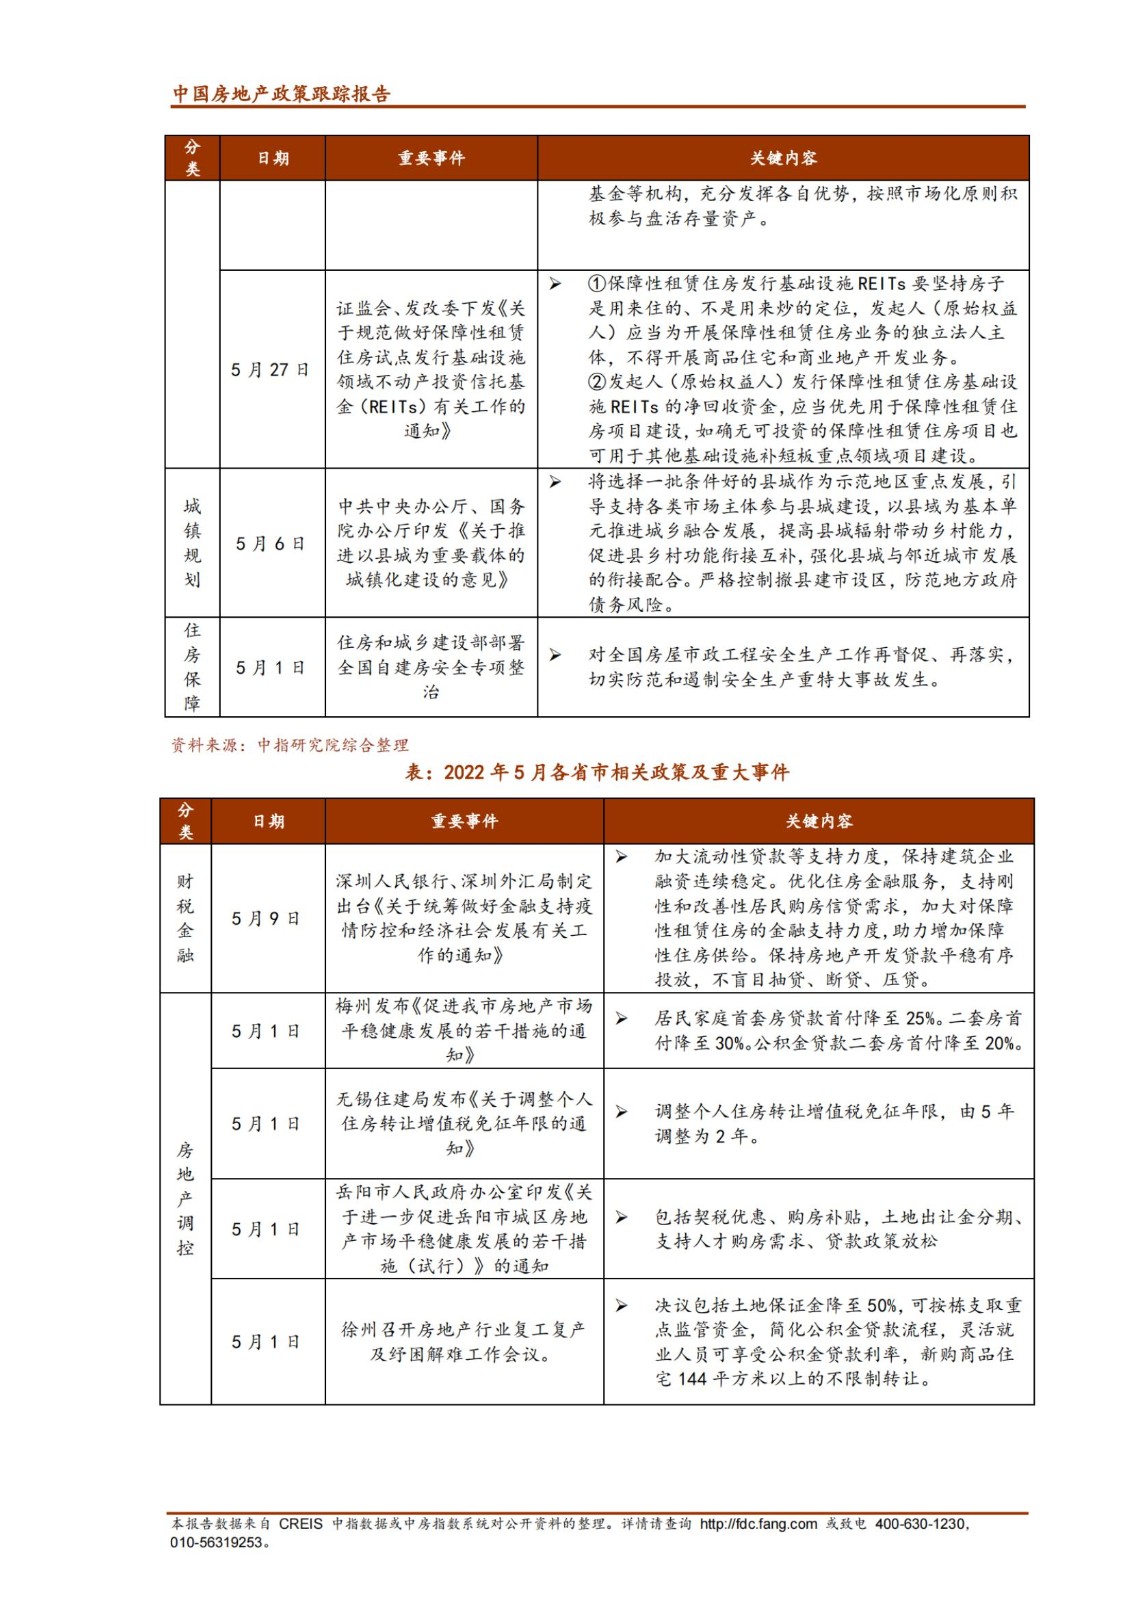 《中指丨中国房地产政策跟踪报告（2022年5月）》_纯图版_03.jpg